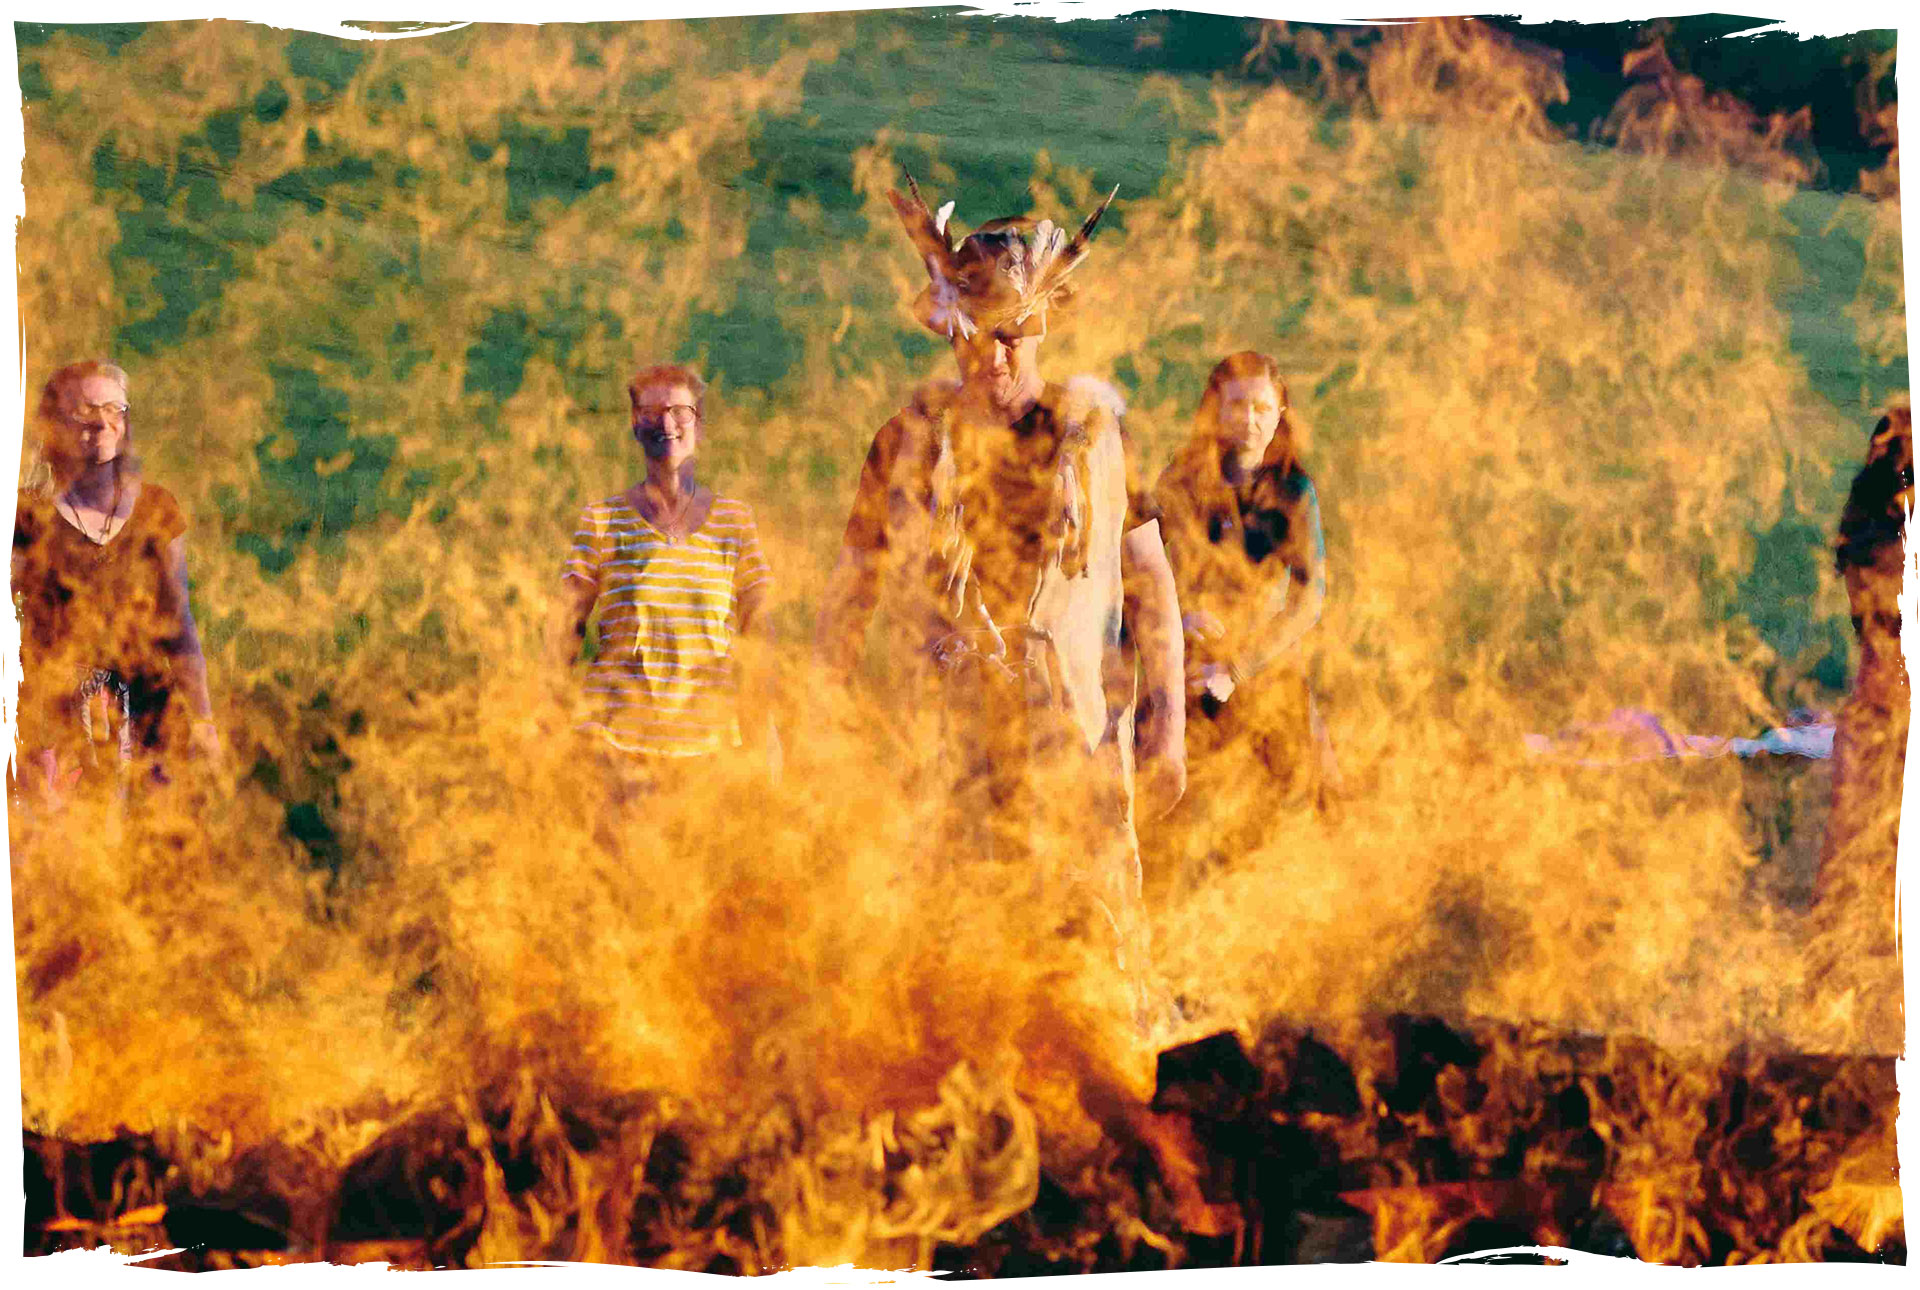 Feuerwand auf Wiese - Schamanistisches Ritual